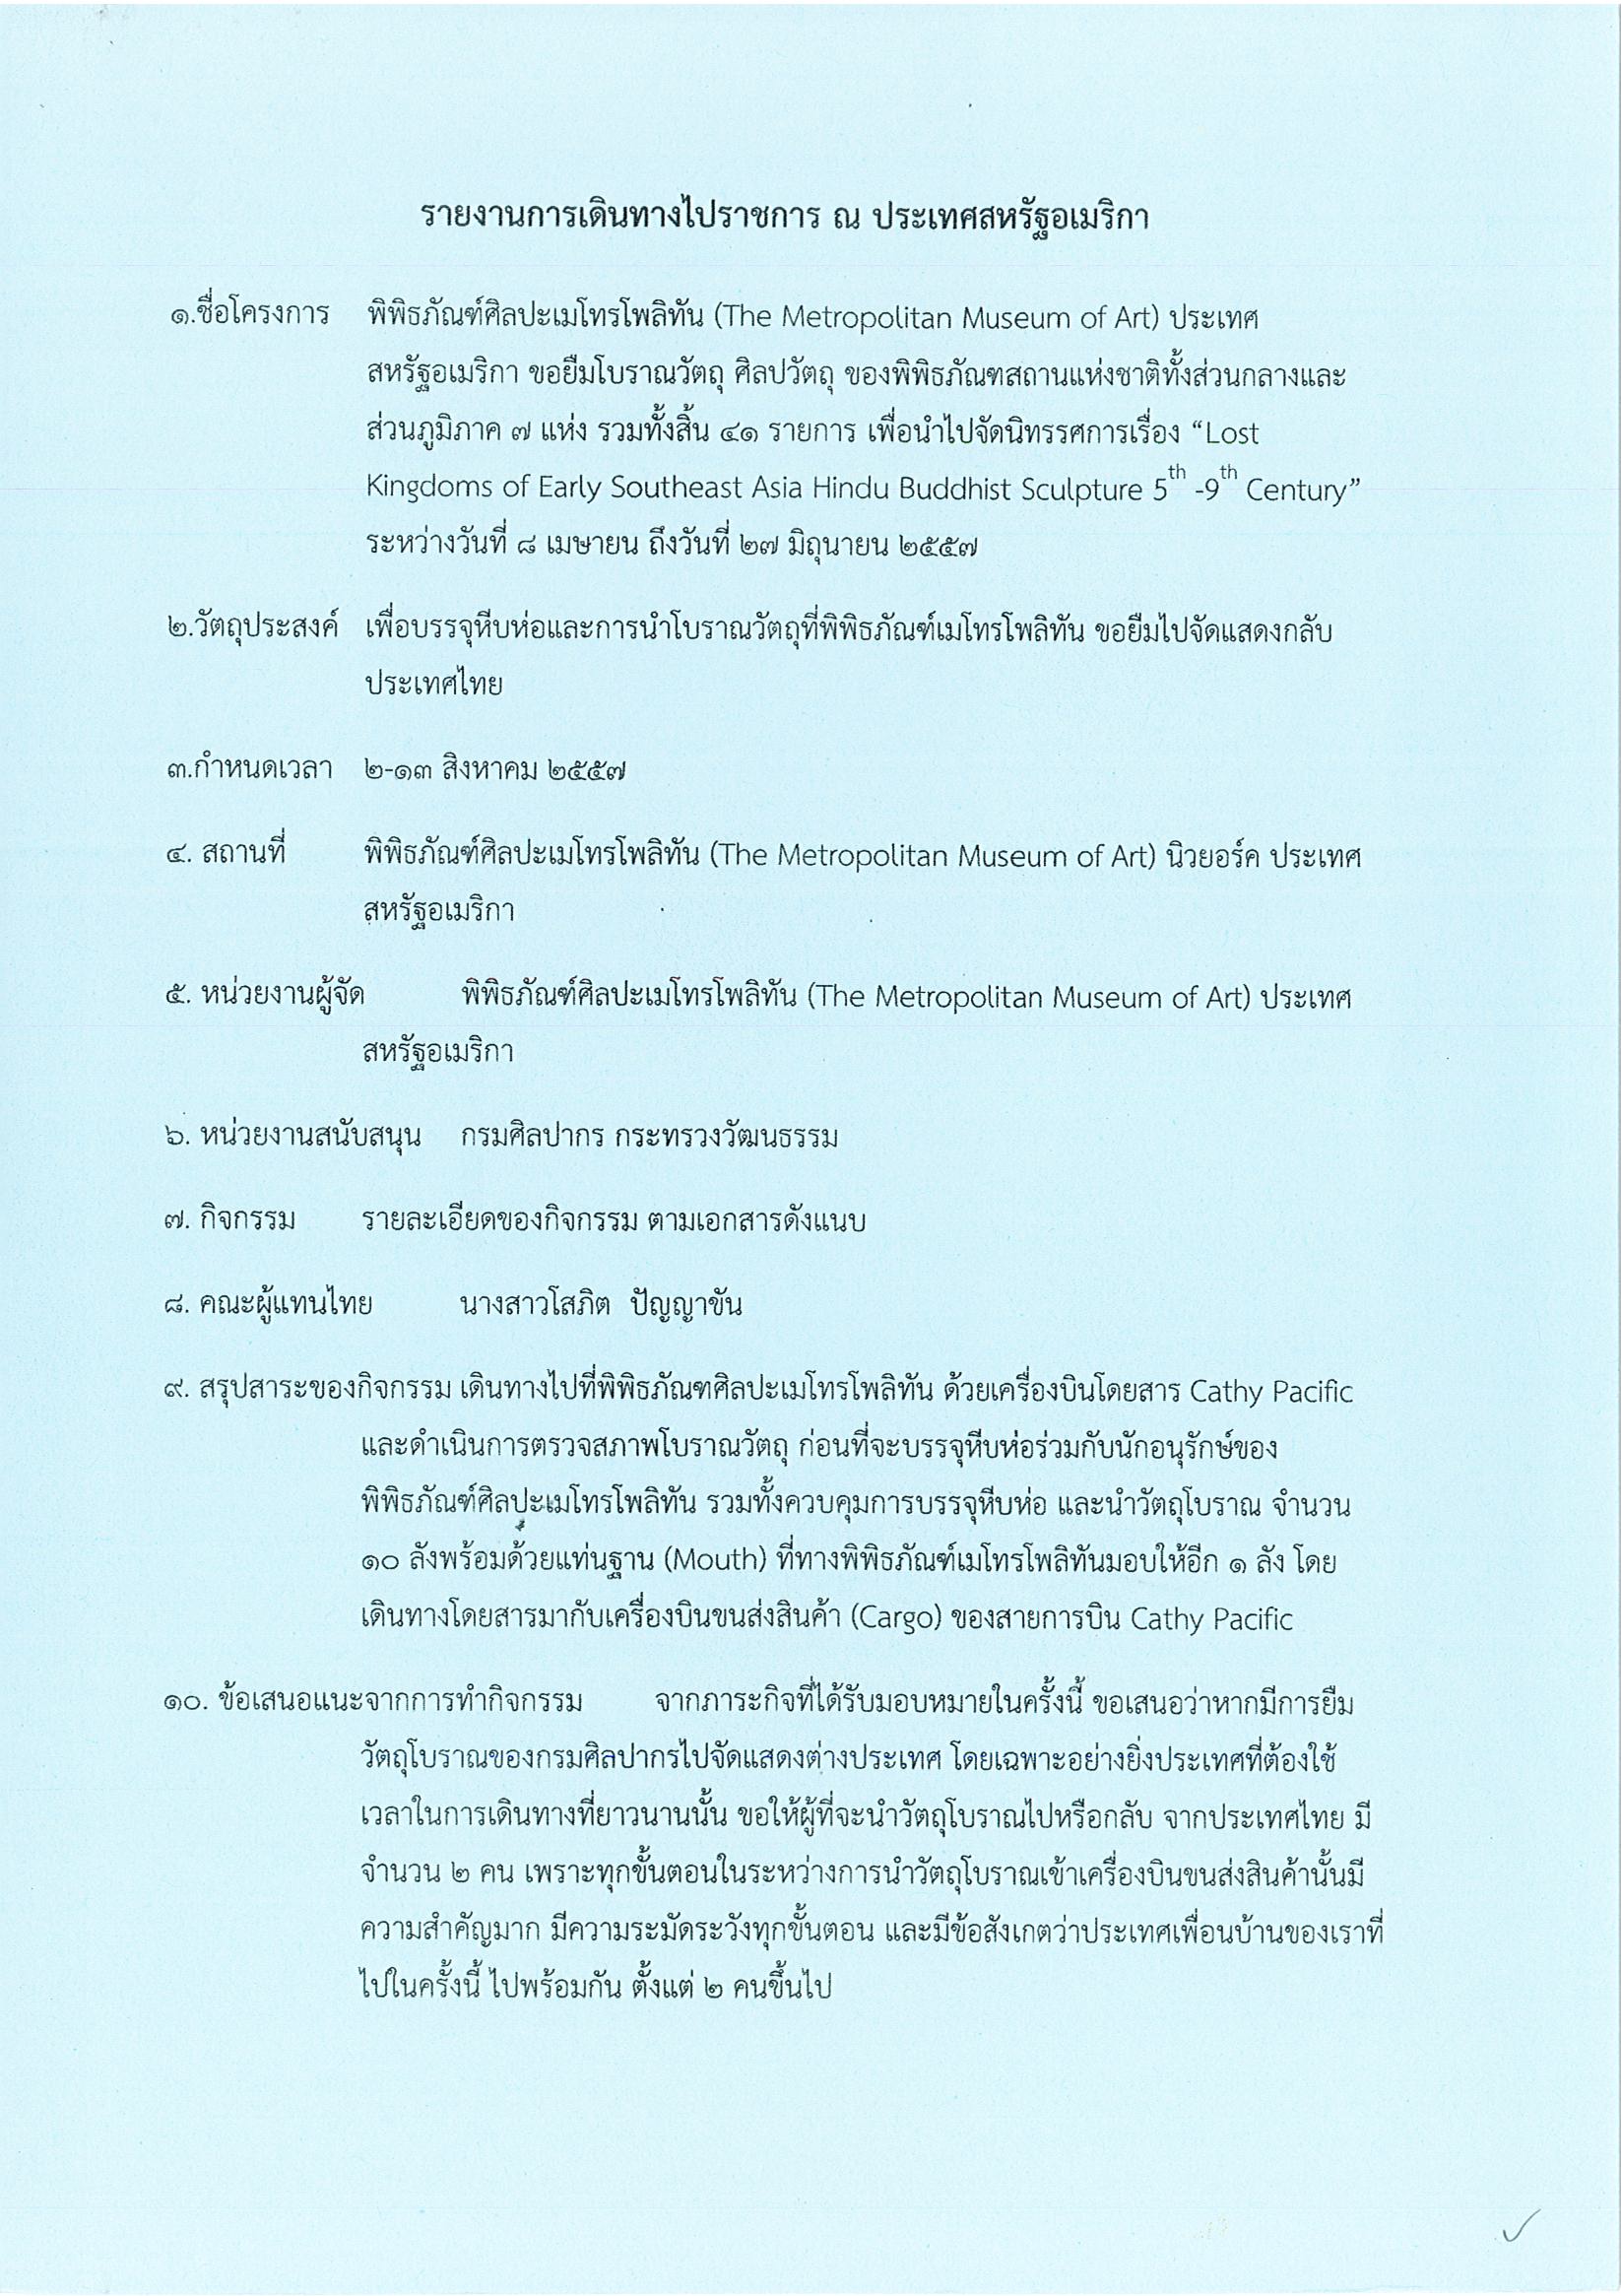 รายงานการเดินทางไปราชการ ณ สหรัฐอเมริกา ระหว่างวันที่ 2 – 13 สิงหาคม 2557 โครงการบรรจุหีบห่อและนำโบราณวัตถุที่พิพิธภัณฑ์เมโทรโพลิทันขอยืมไปจัดแสดงกลับประเทศไทย